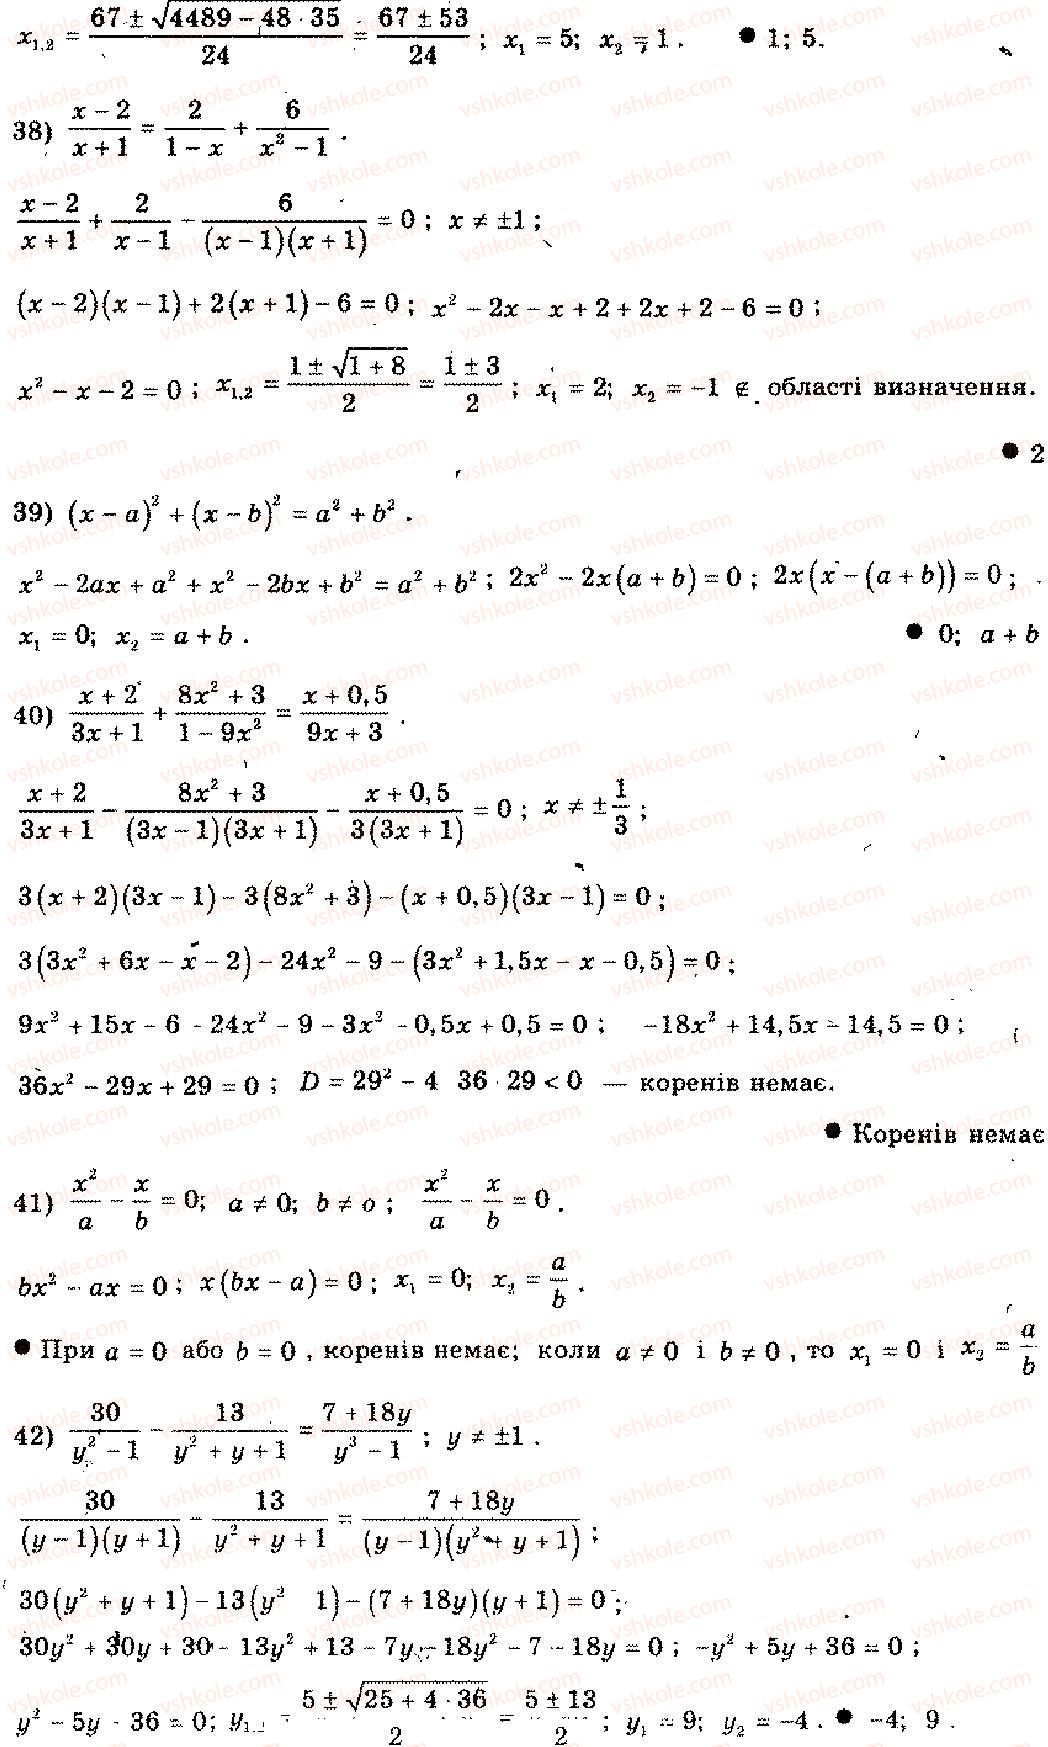 11-algebra-mi-shkil-zi-slepkan-os-dubinchuk-2006--rozdil-15-povtorennya-kursu-algebri-osnovnoyi-shkoli-3-1-rnd2930.jpg